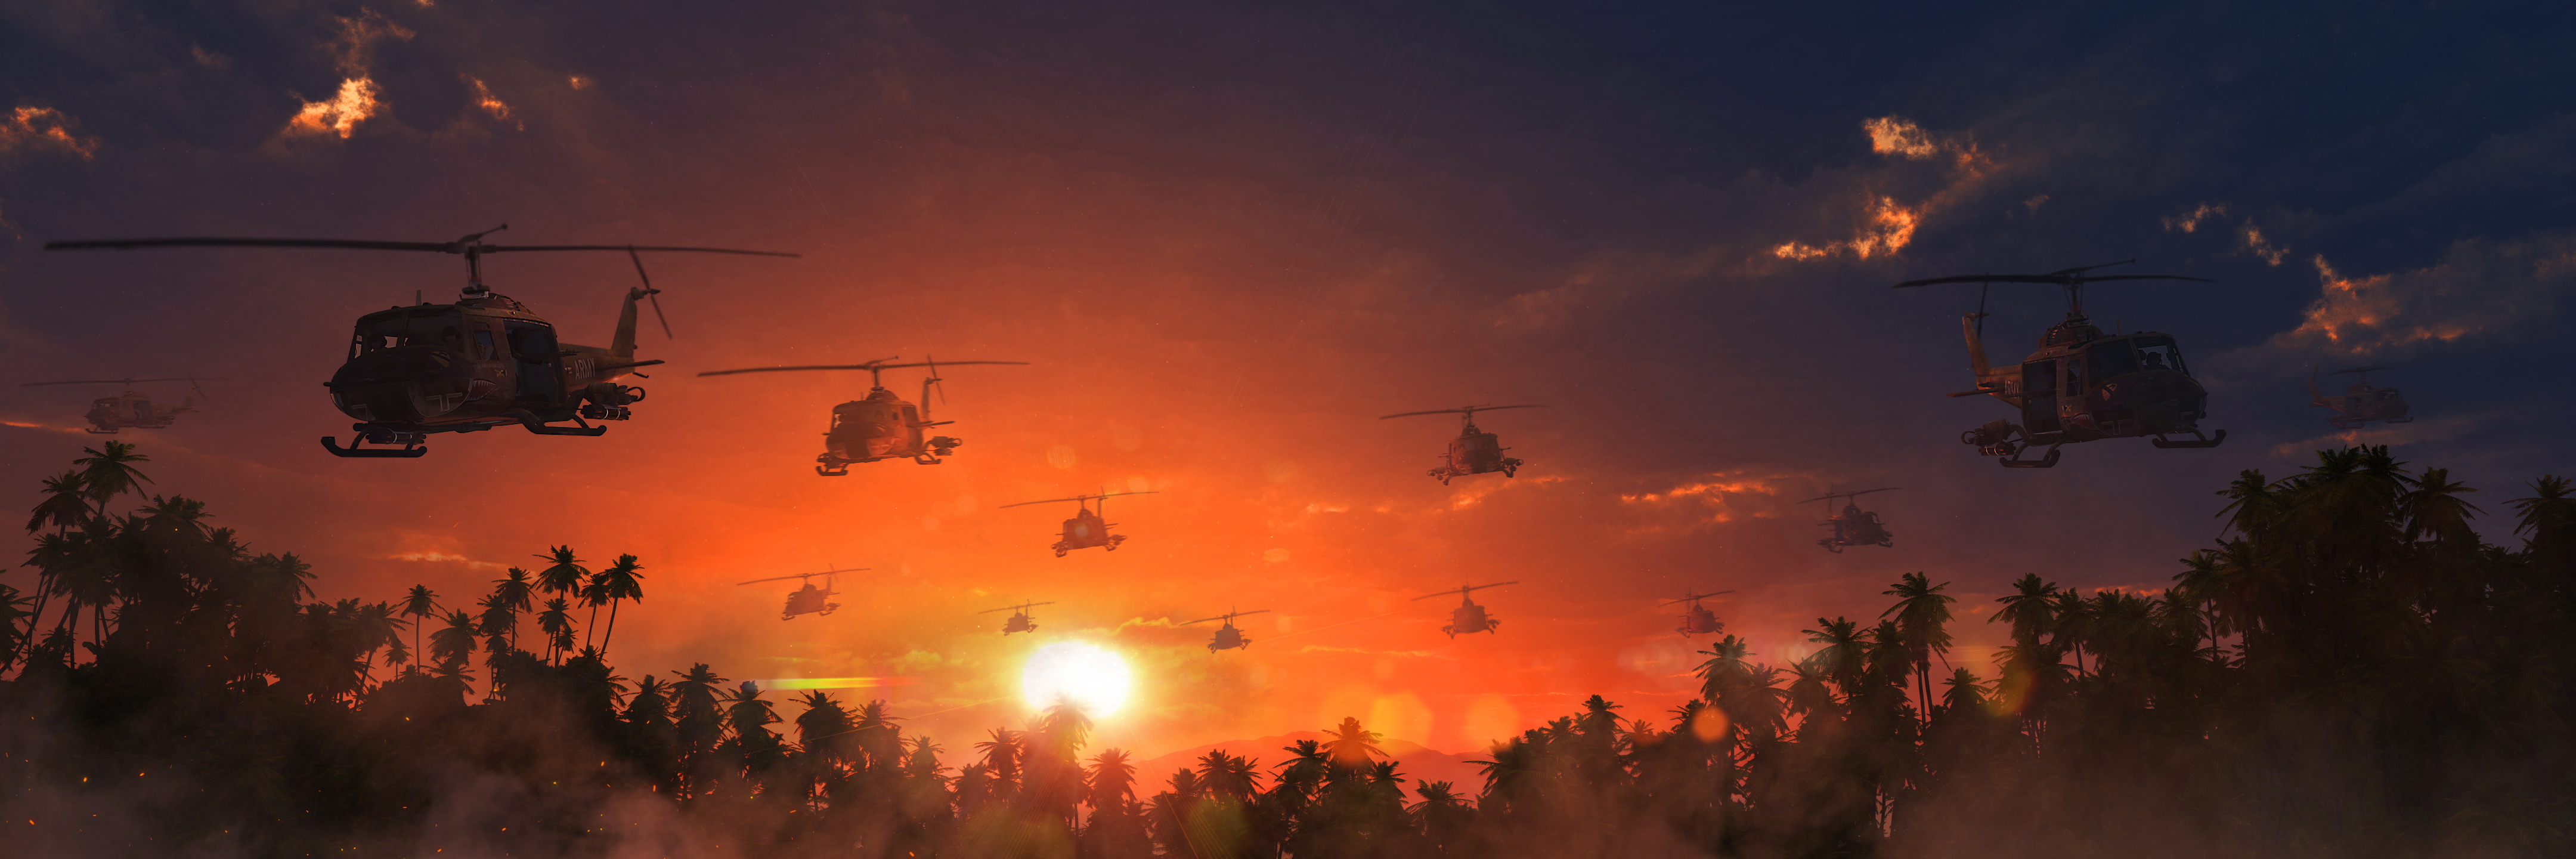 Desktop Wallpaper Helicopters The Vietnam War Sun Sky